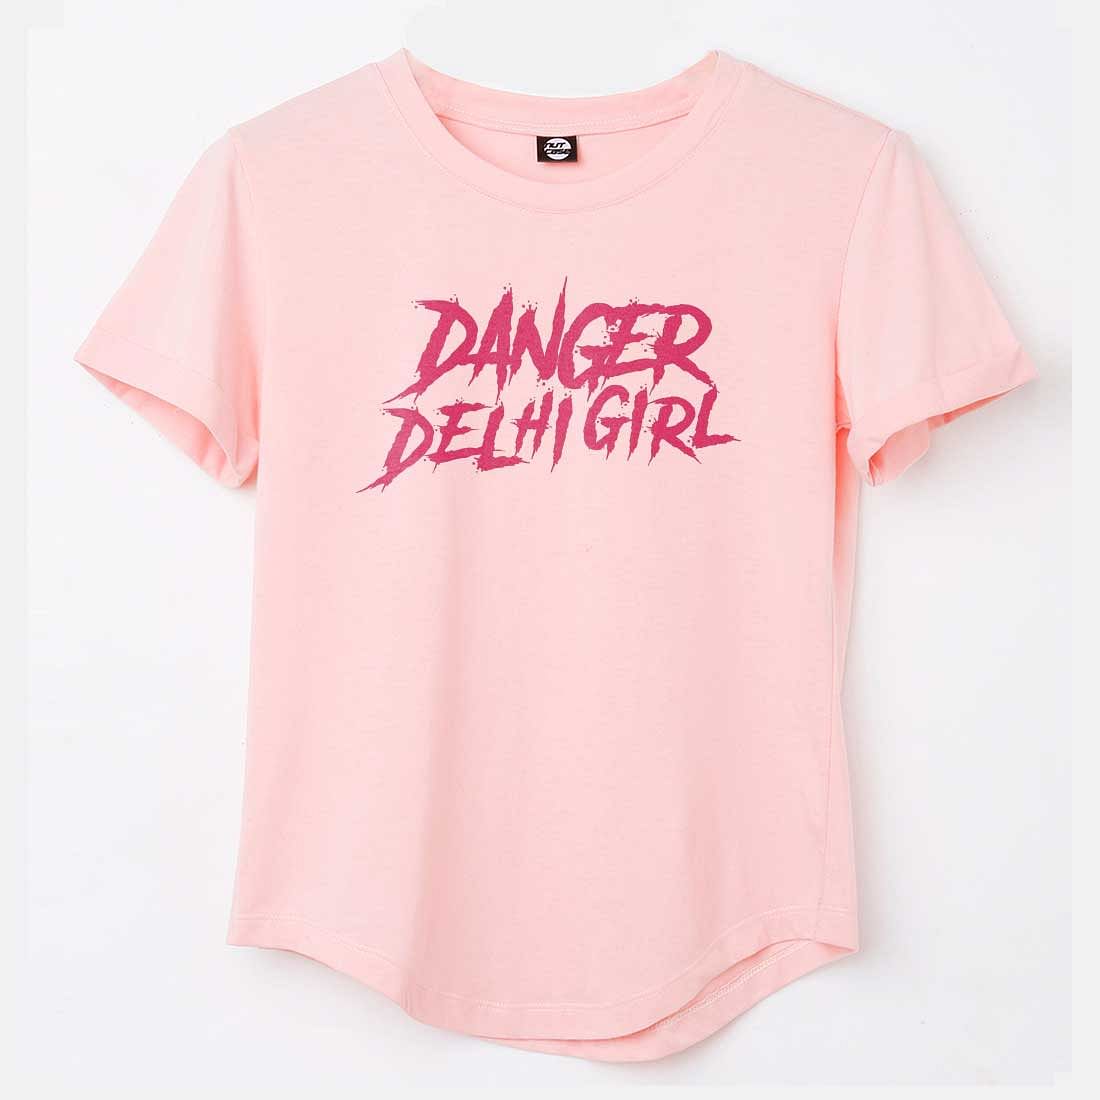 Up Down T Shirts For Women  - Danger Delhi girl Nutcase